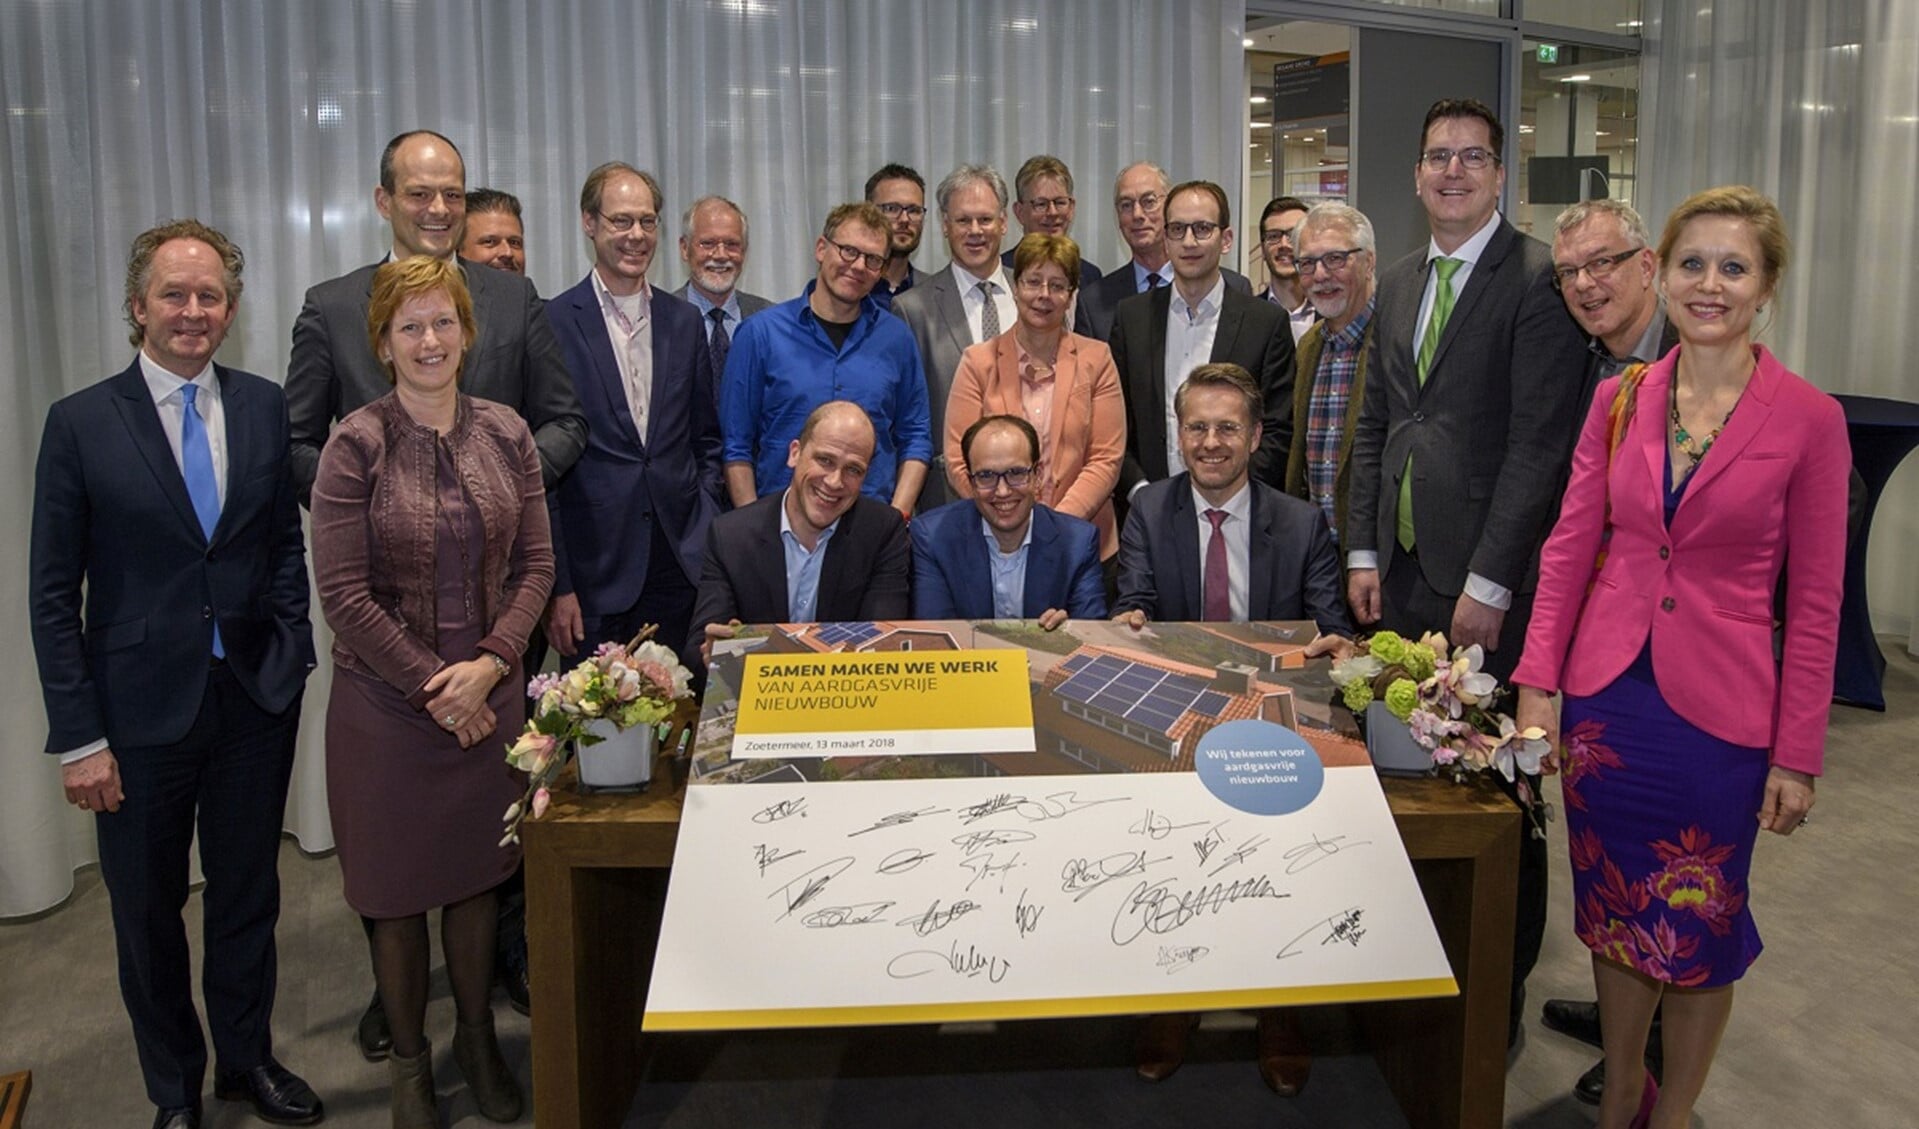 Ondertekening convenant Aardgasvrije nieuwbouw in het stadhuis van Zoetermeer;  namens Leidschendam-Voorburg zette wethouder Floor Kist van milieu en duurzaamheid zijn handtekening.